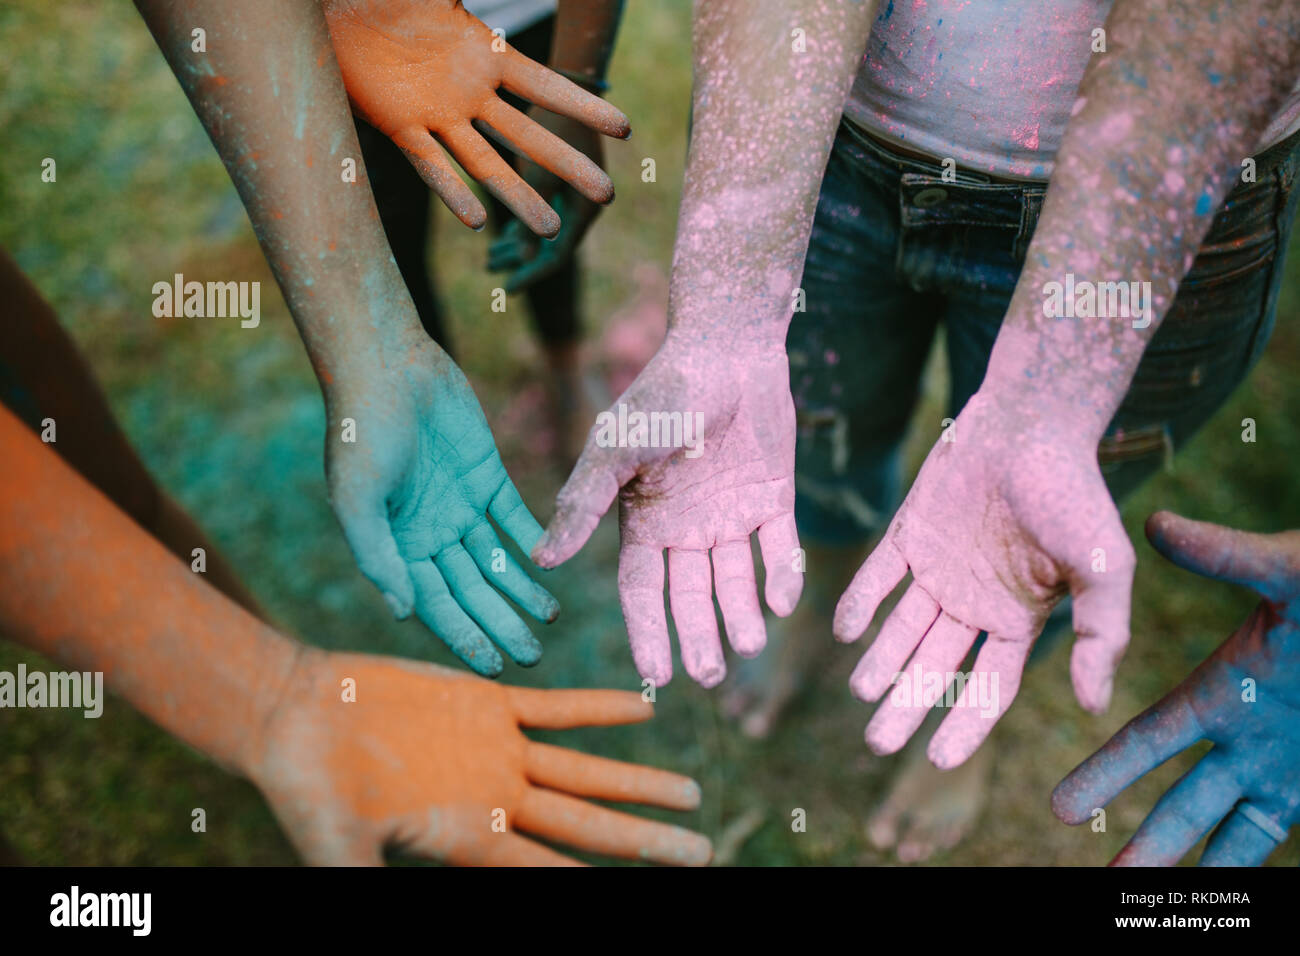 Freunde zeigen ihre bunte Hände beim Spielen Holi in einem Park. In der Nähe der Hände beim Spielen in verschiedenen Farben Holi mit Puder Farben. Stockfoto